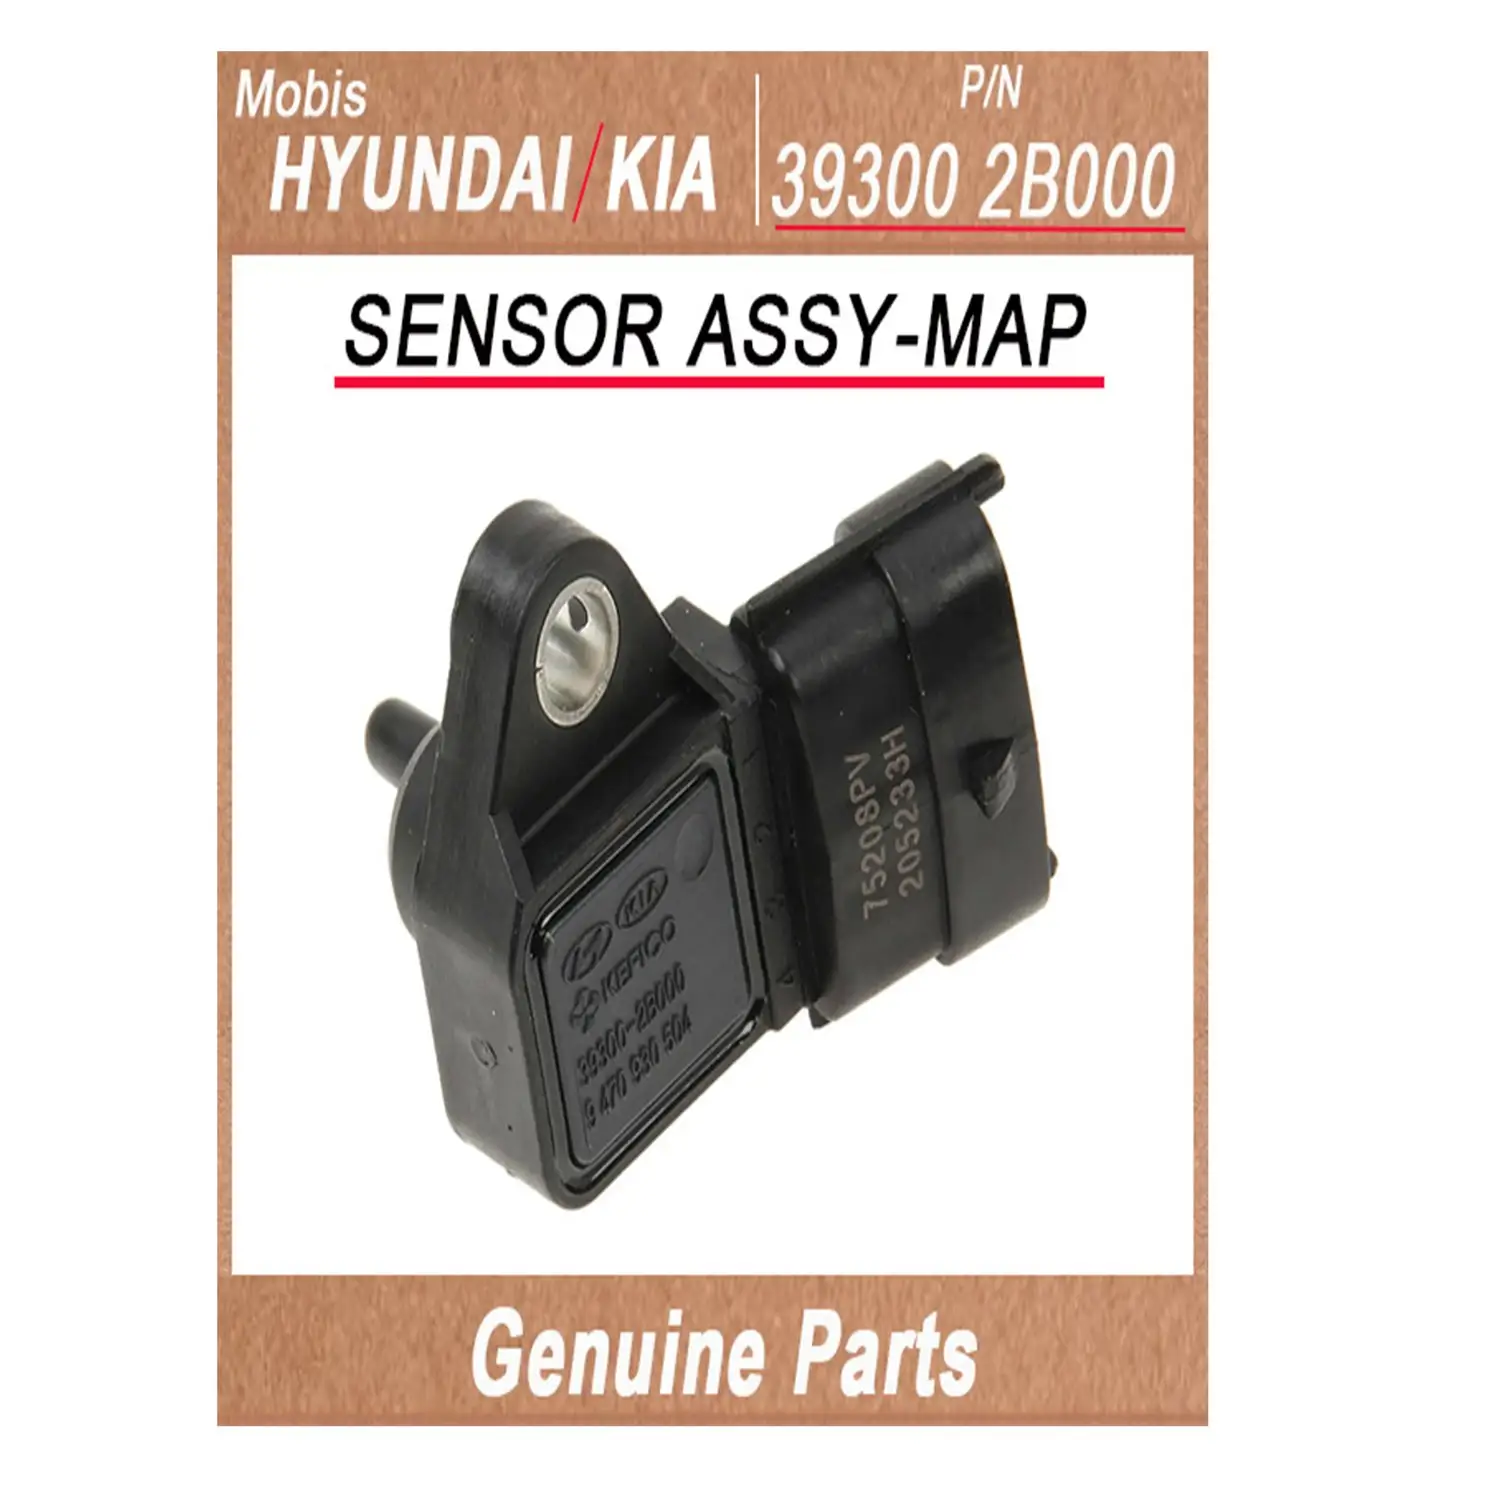 393002B000 / SENSOR ASSY-MAP / Genuine Korean Automotive Spare Parts / hyundai kia (mobis)